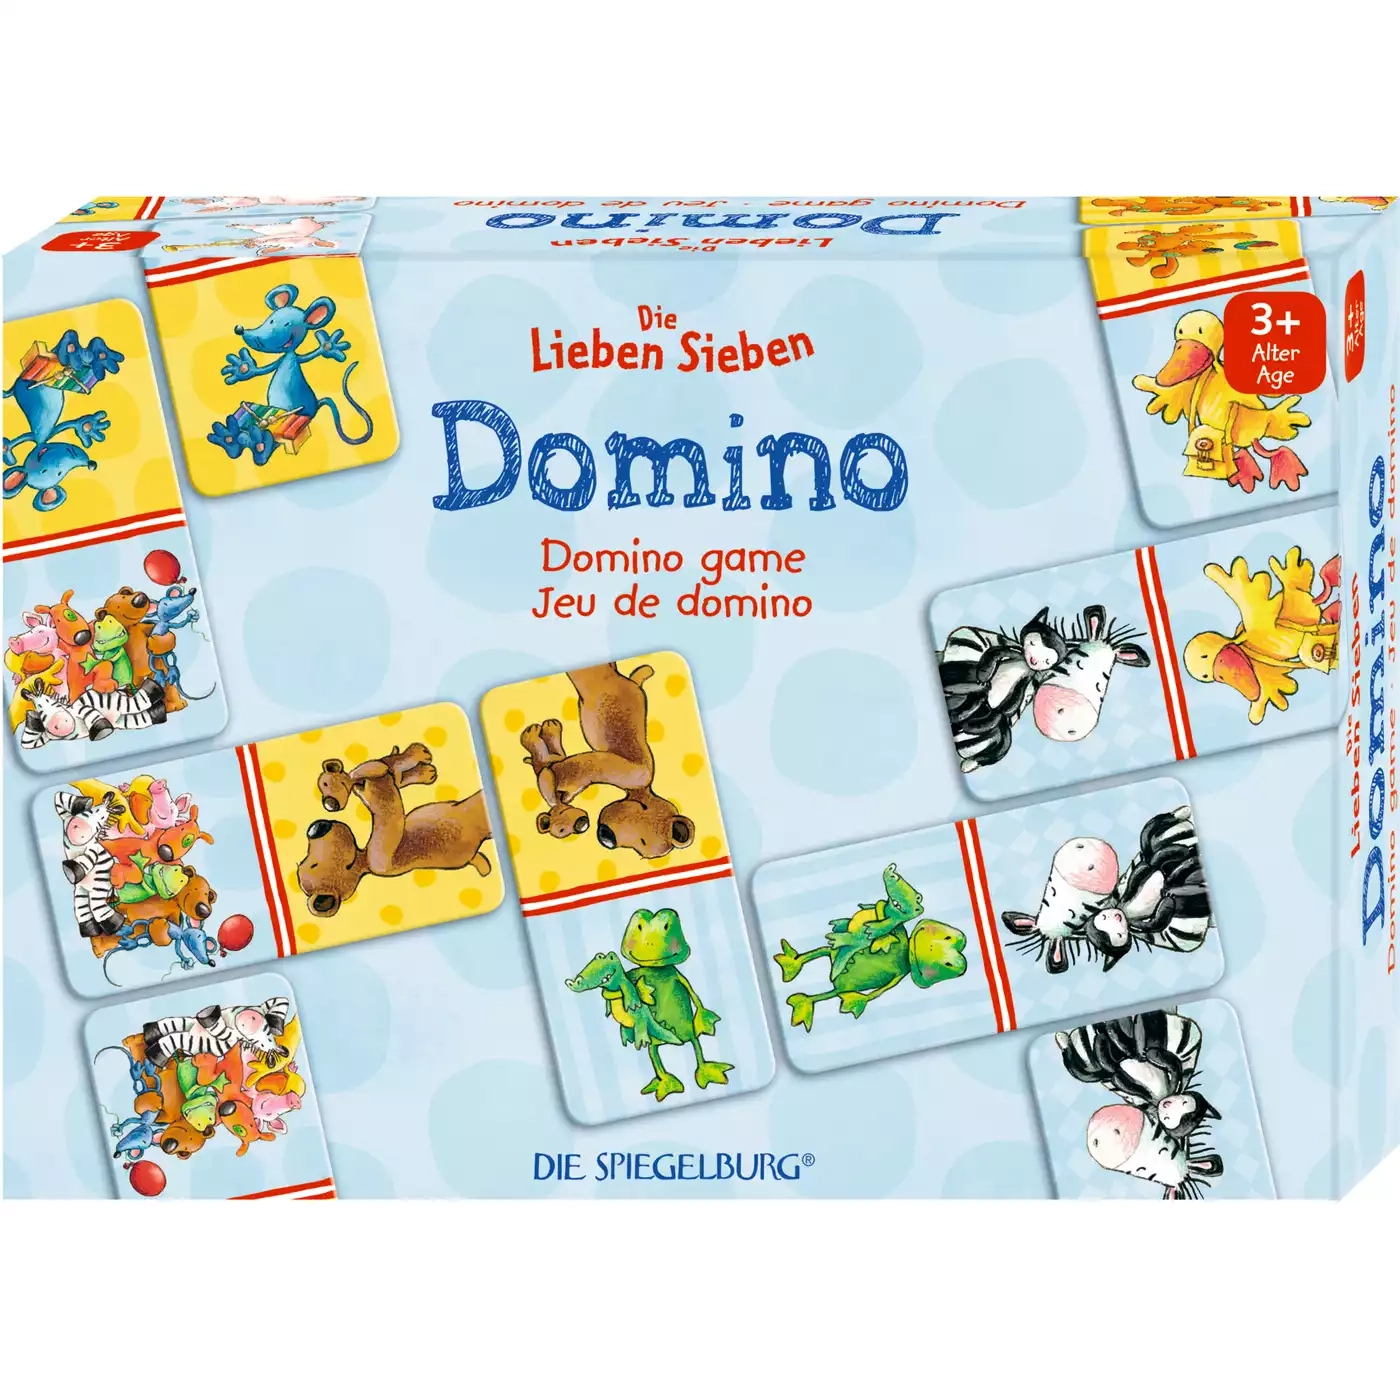 Domino Die Lieben Sieben DIE SPIEGELBURG 2000574527703 1